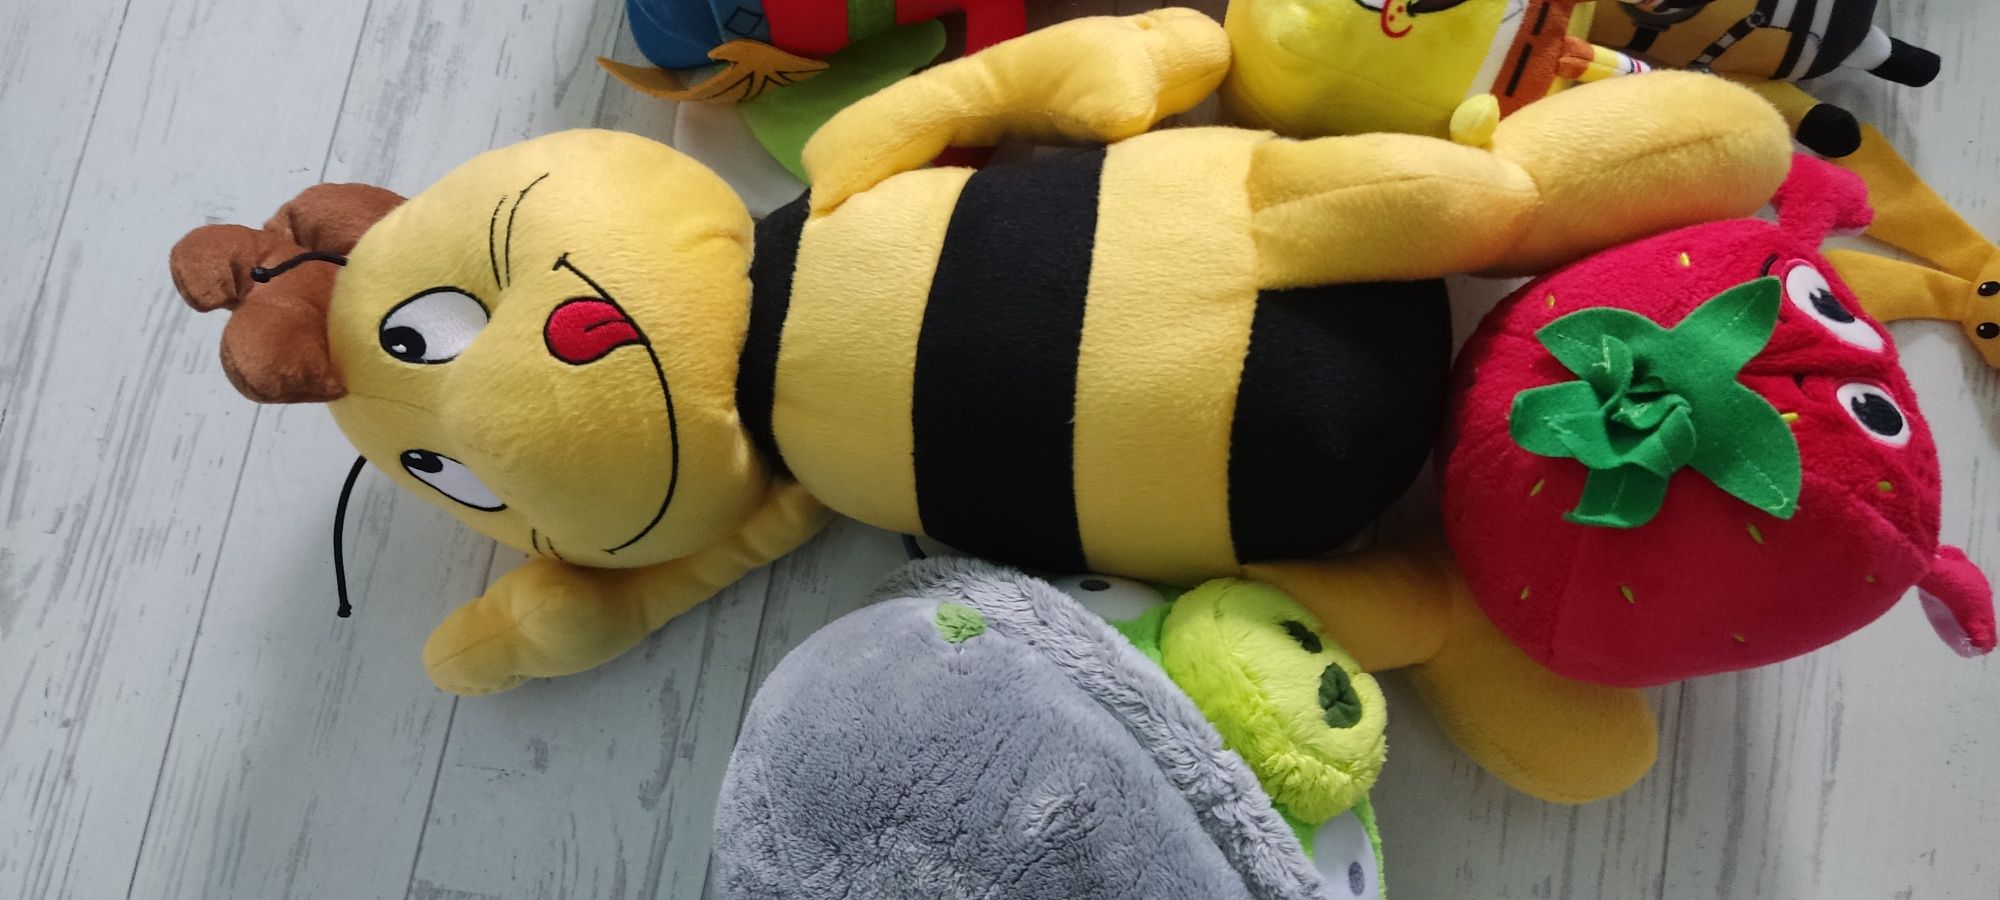 Pluszowe zabawki, Pszczółka Gucio, Zinks, Angry Birds, Minionki